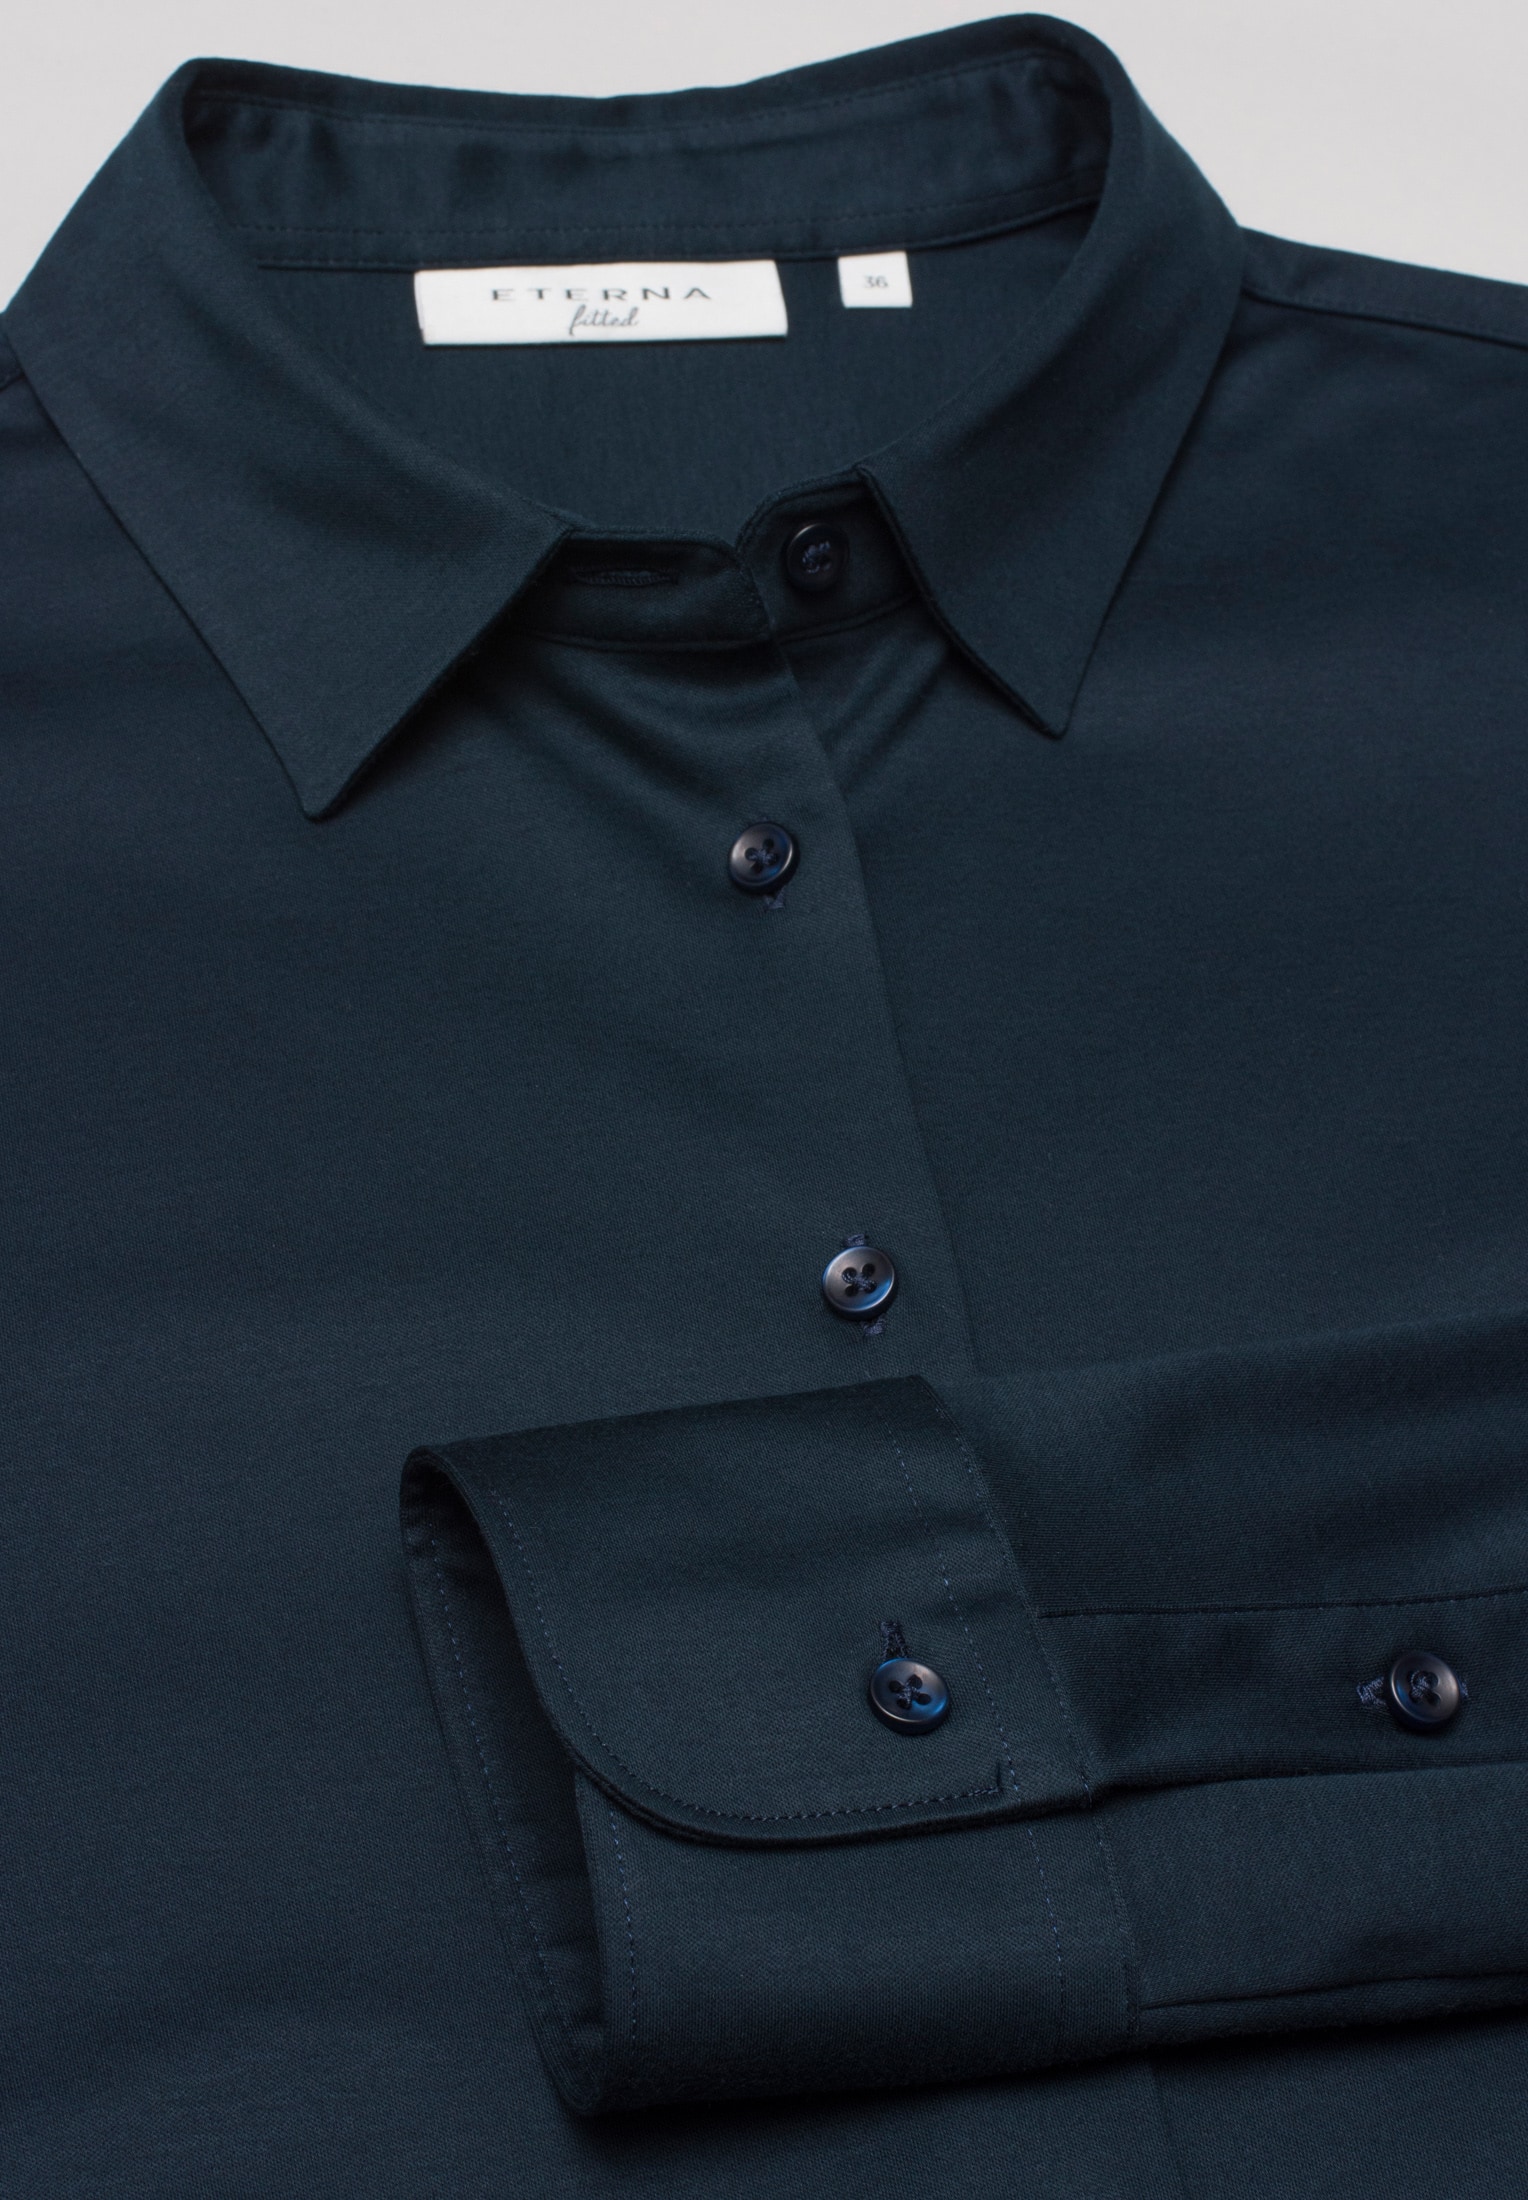 Jersey Shirt Blouse in navy vlakte